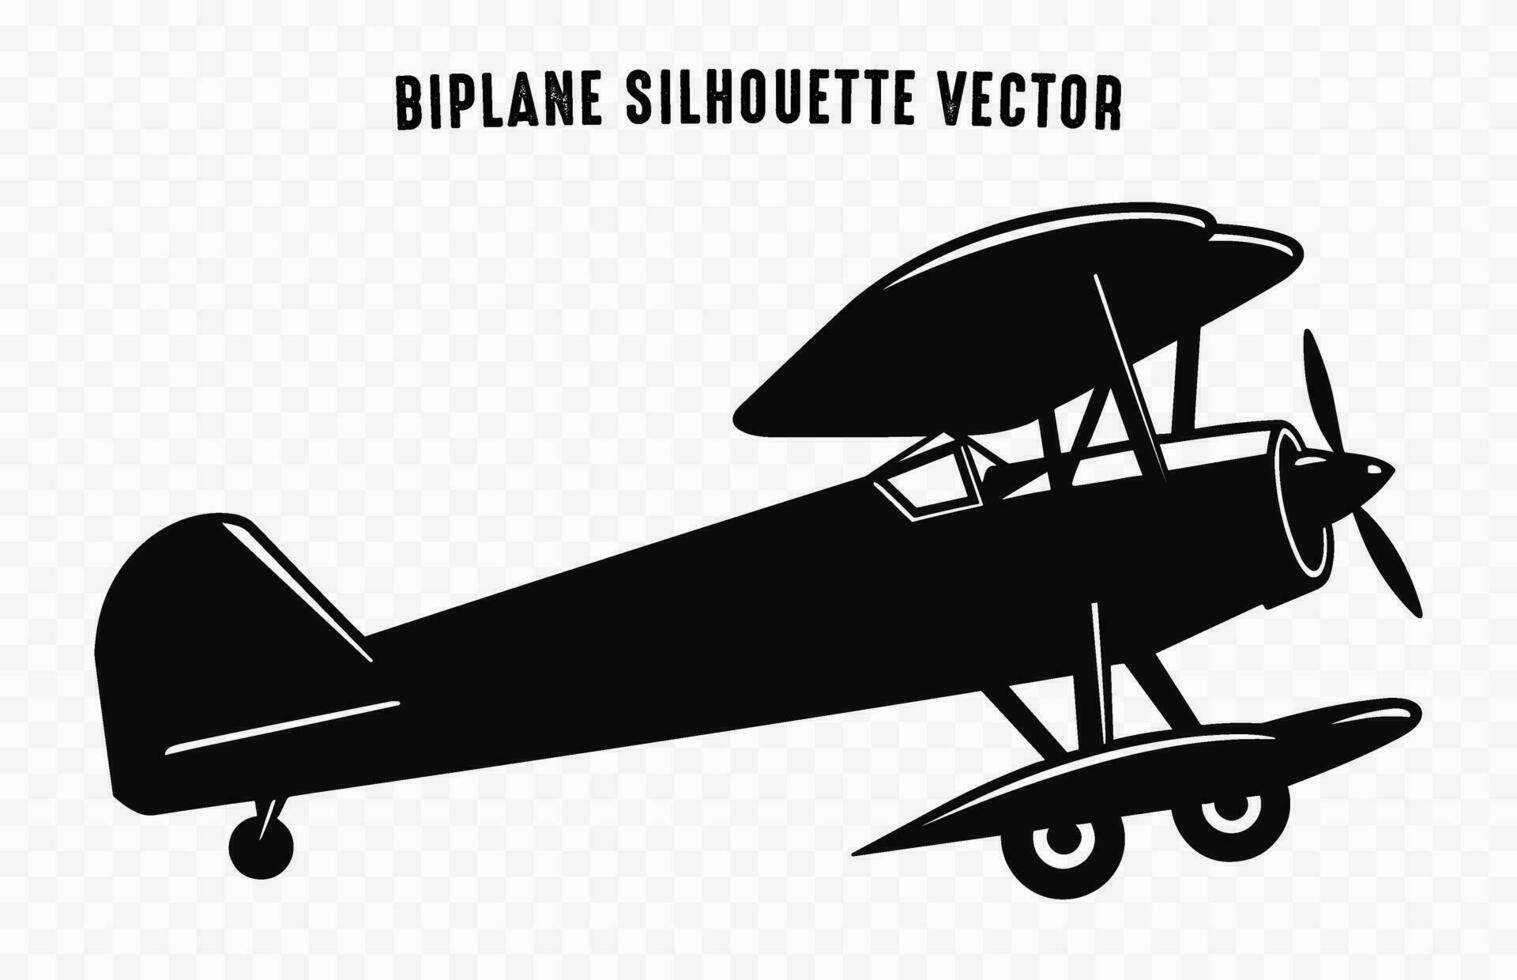 vieux biplan silhouette vecteur gratuit